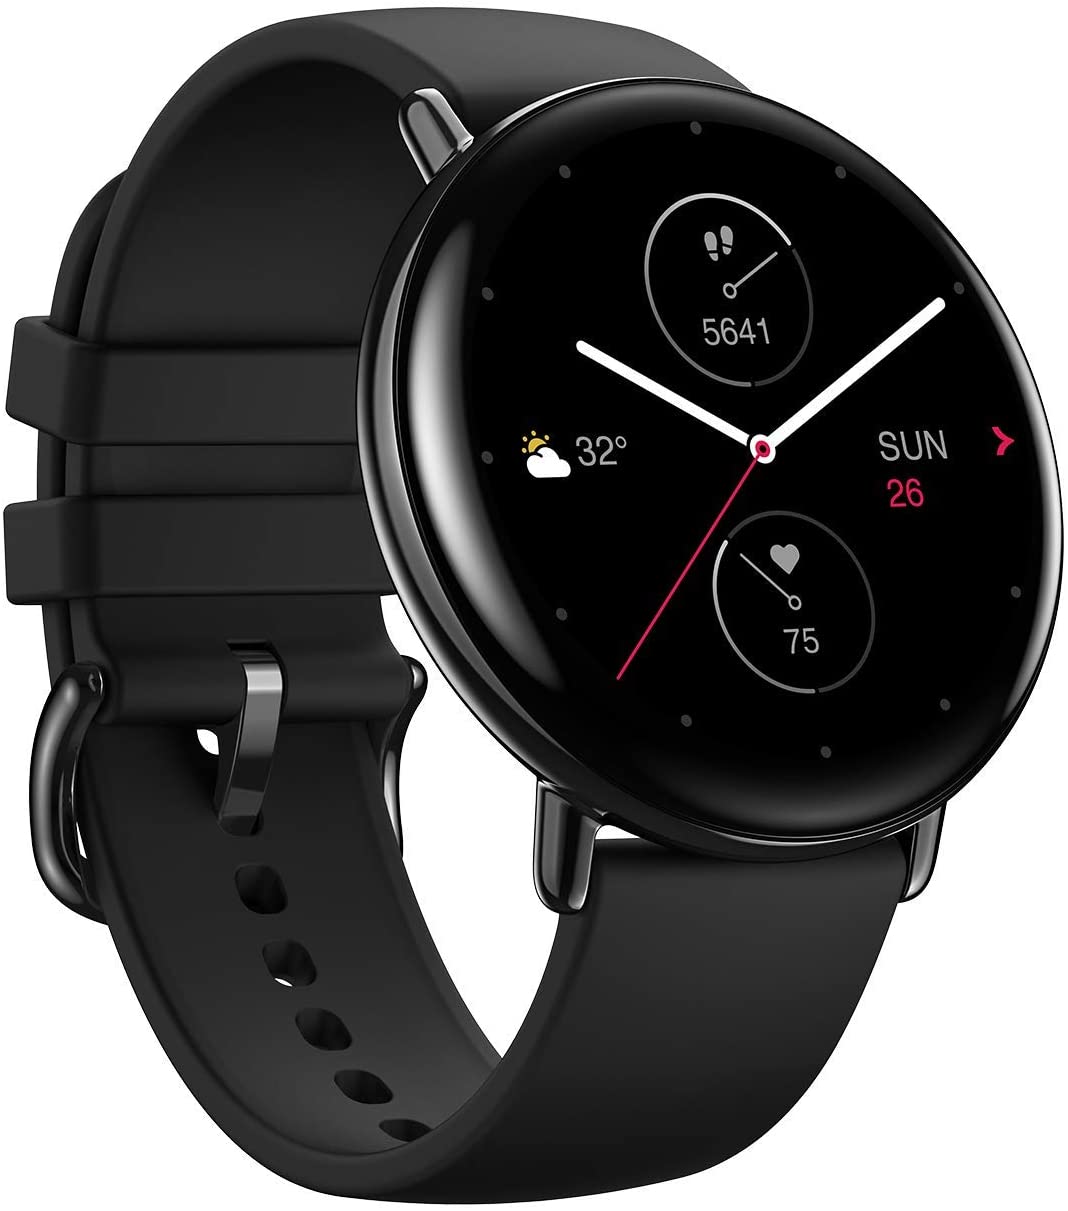 Smartwatch amazfit zepp e round onyx black